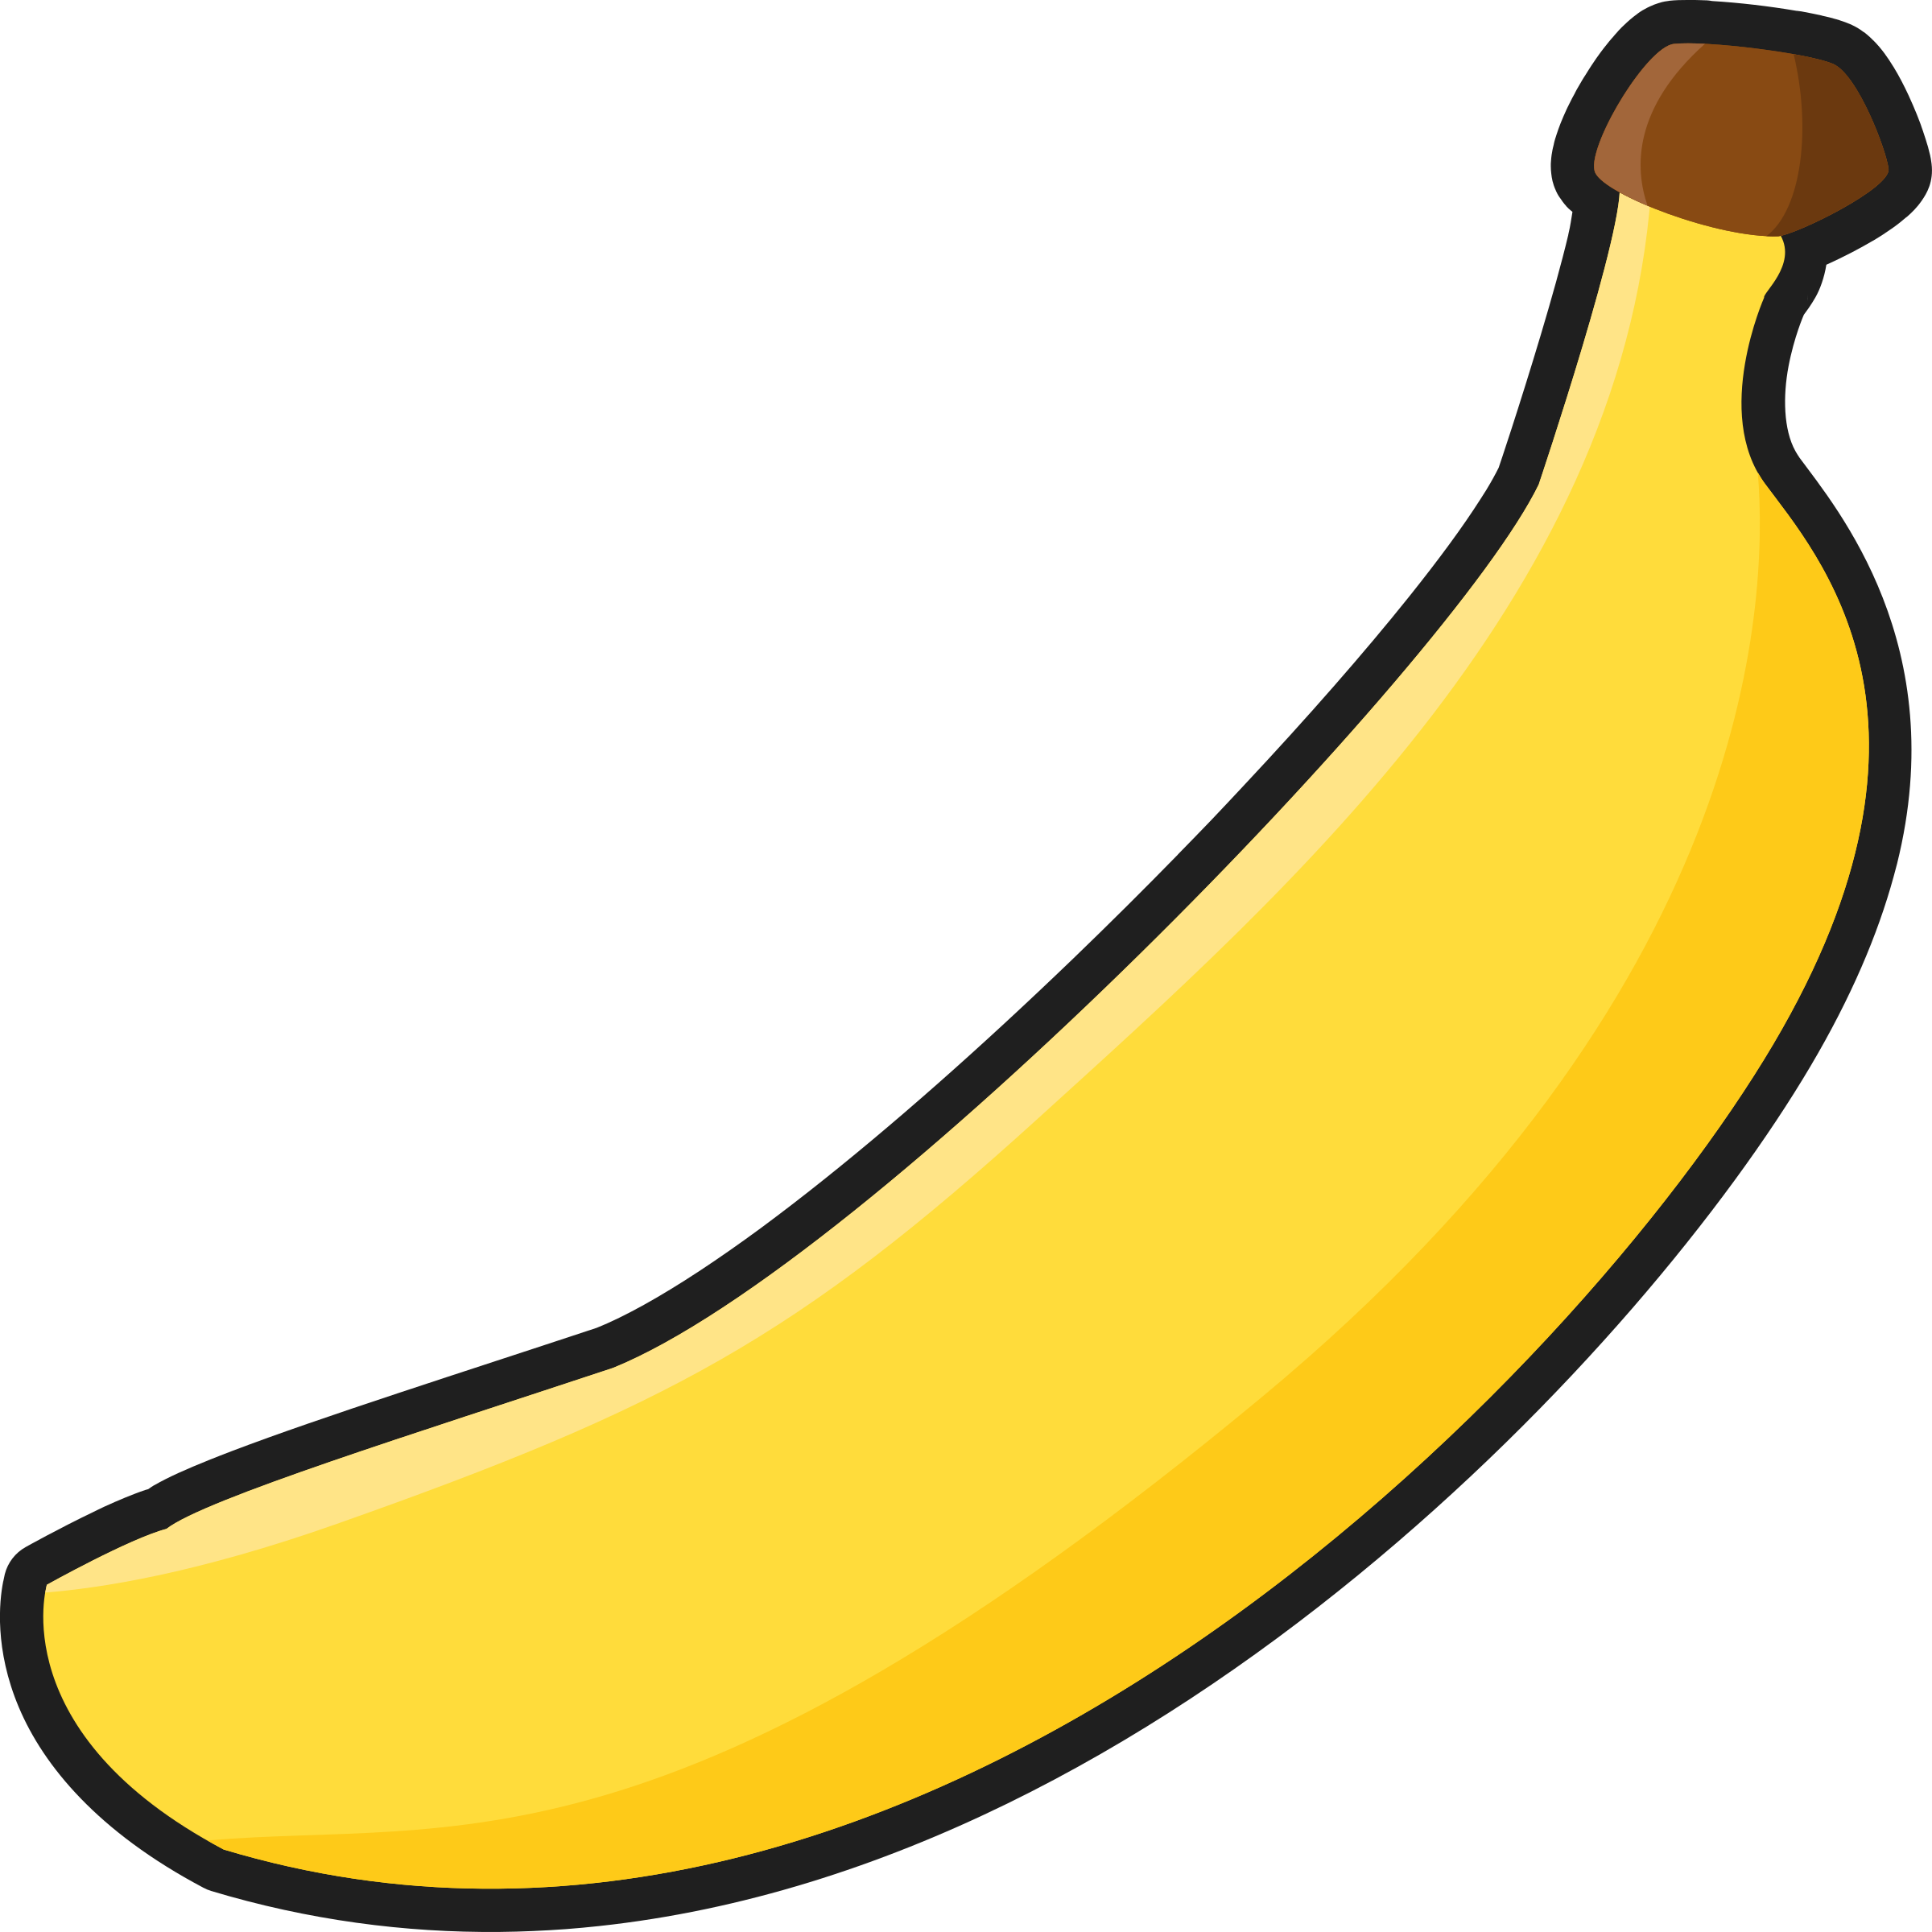 Banana clipart black and white banana clip art black and ...